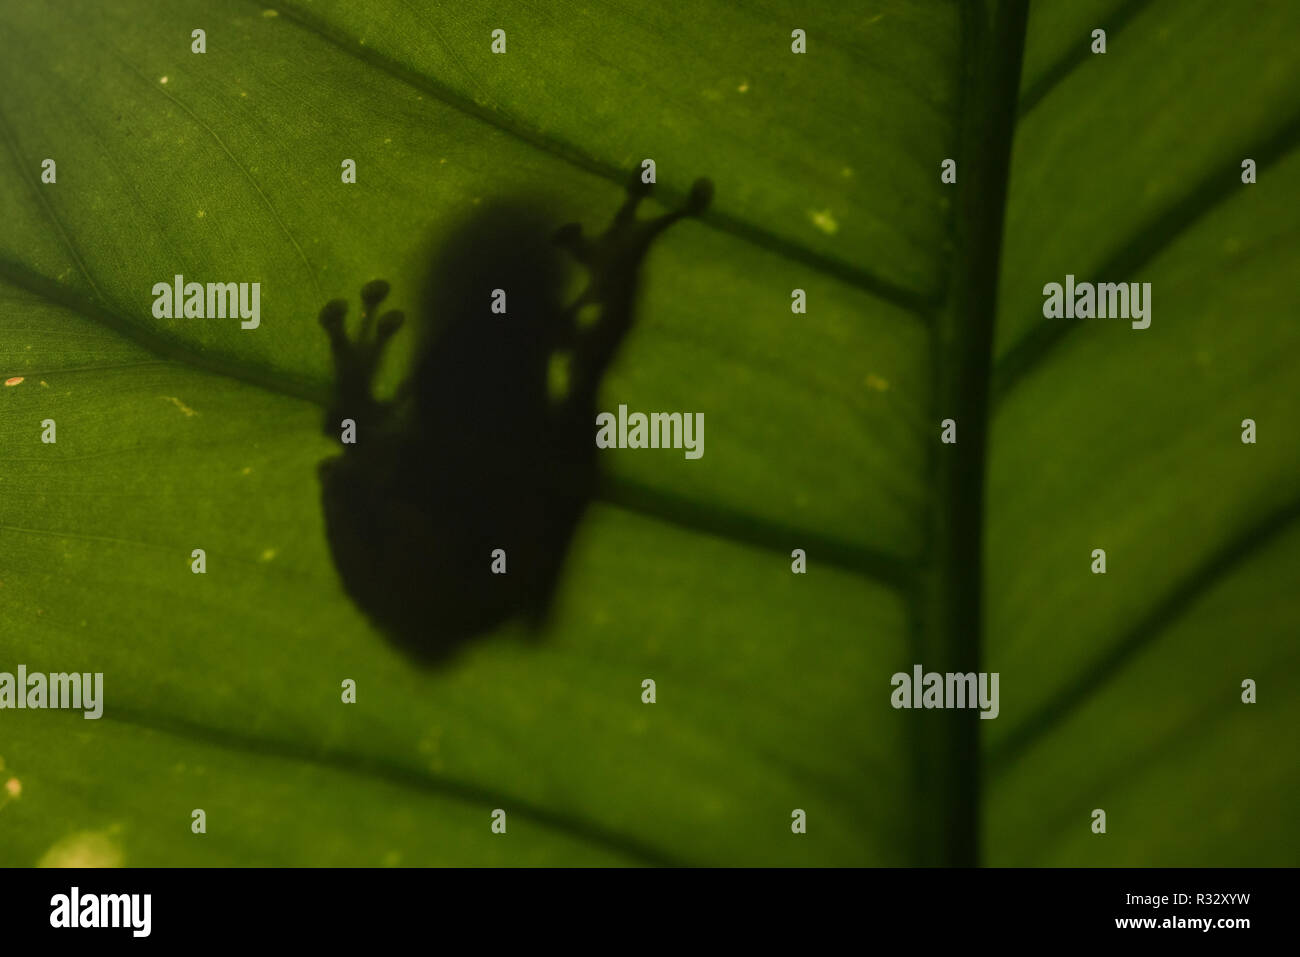 L'ombre d'une grenouille est visible sur la face inférieure d'une feuille dans la forêt amazonienne. Banque D'Images